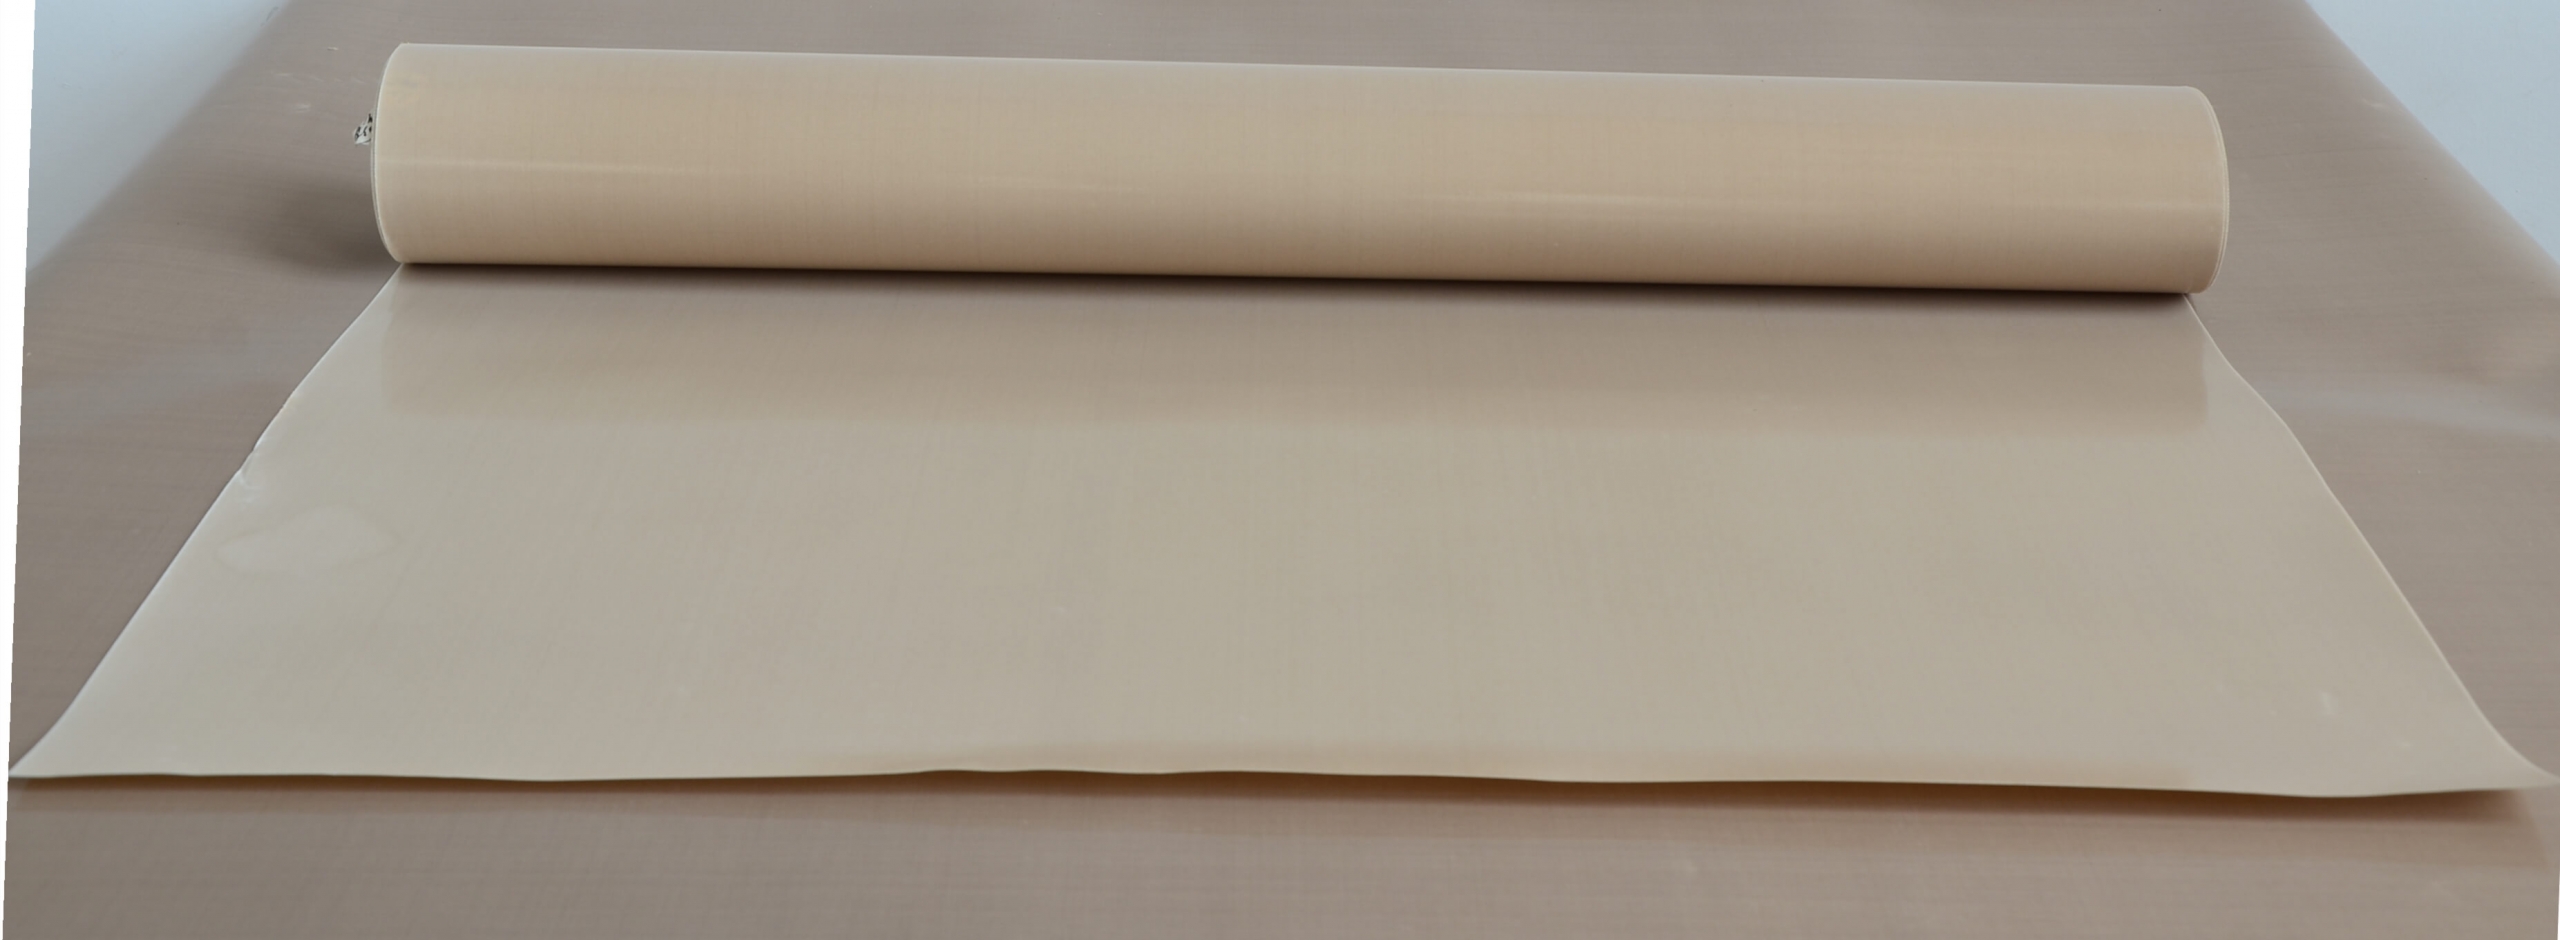 Teflon coated fabric